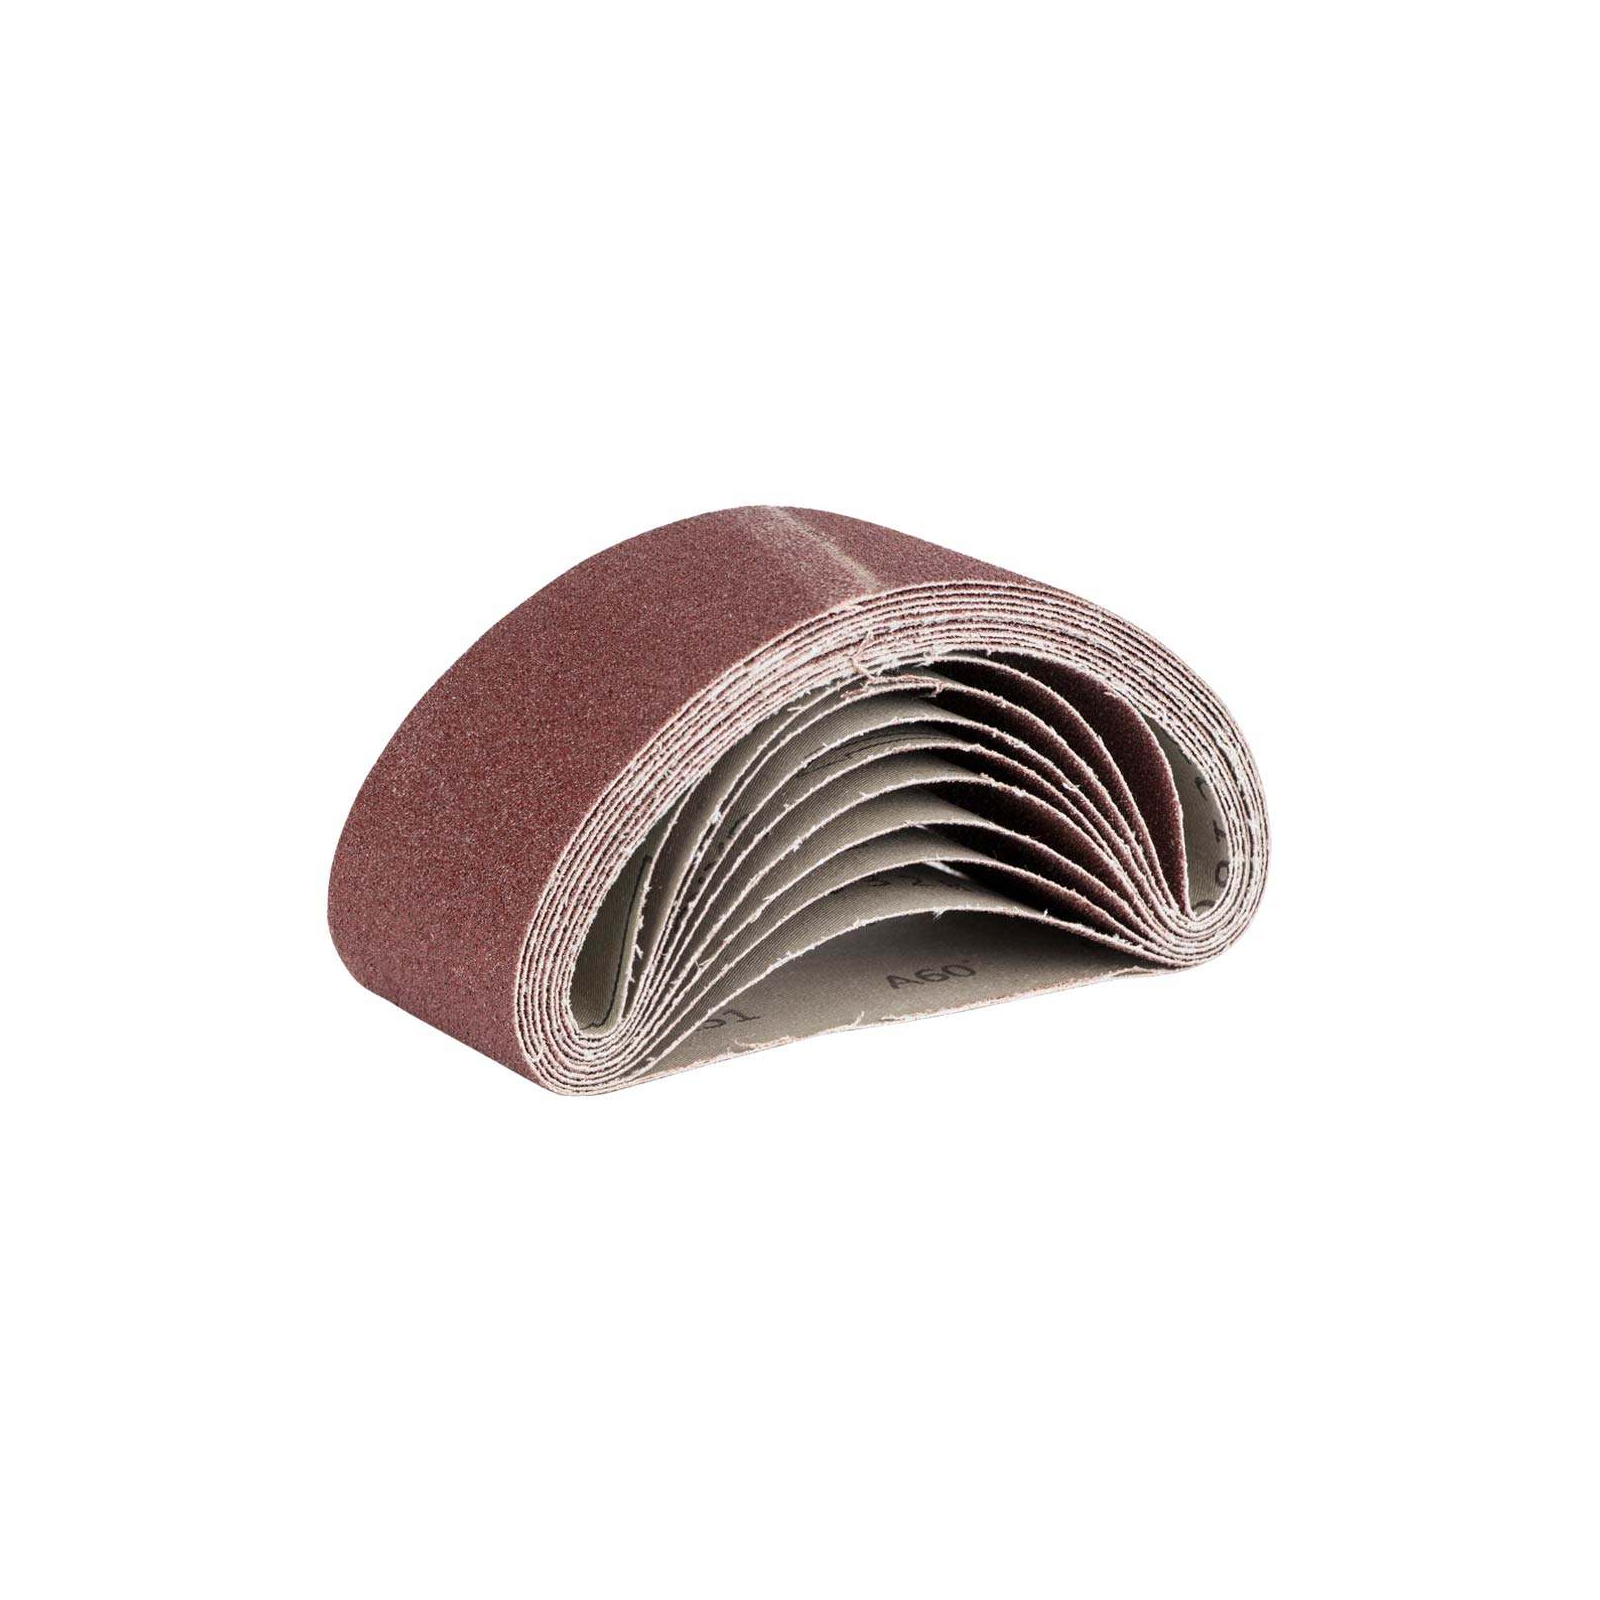 Наждачная бумага Sigma лента кольцевая 75x457мм P120 (10шт) (9151121)